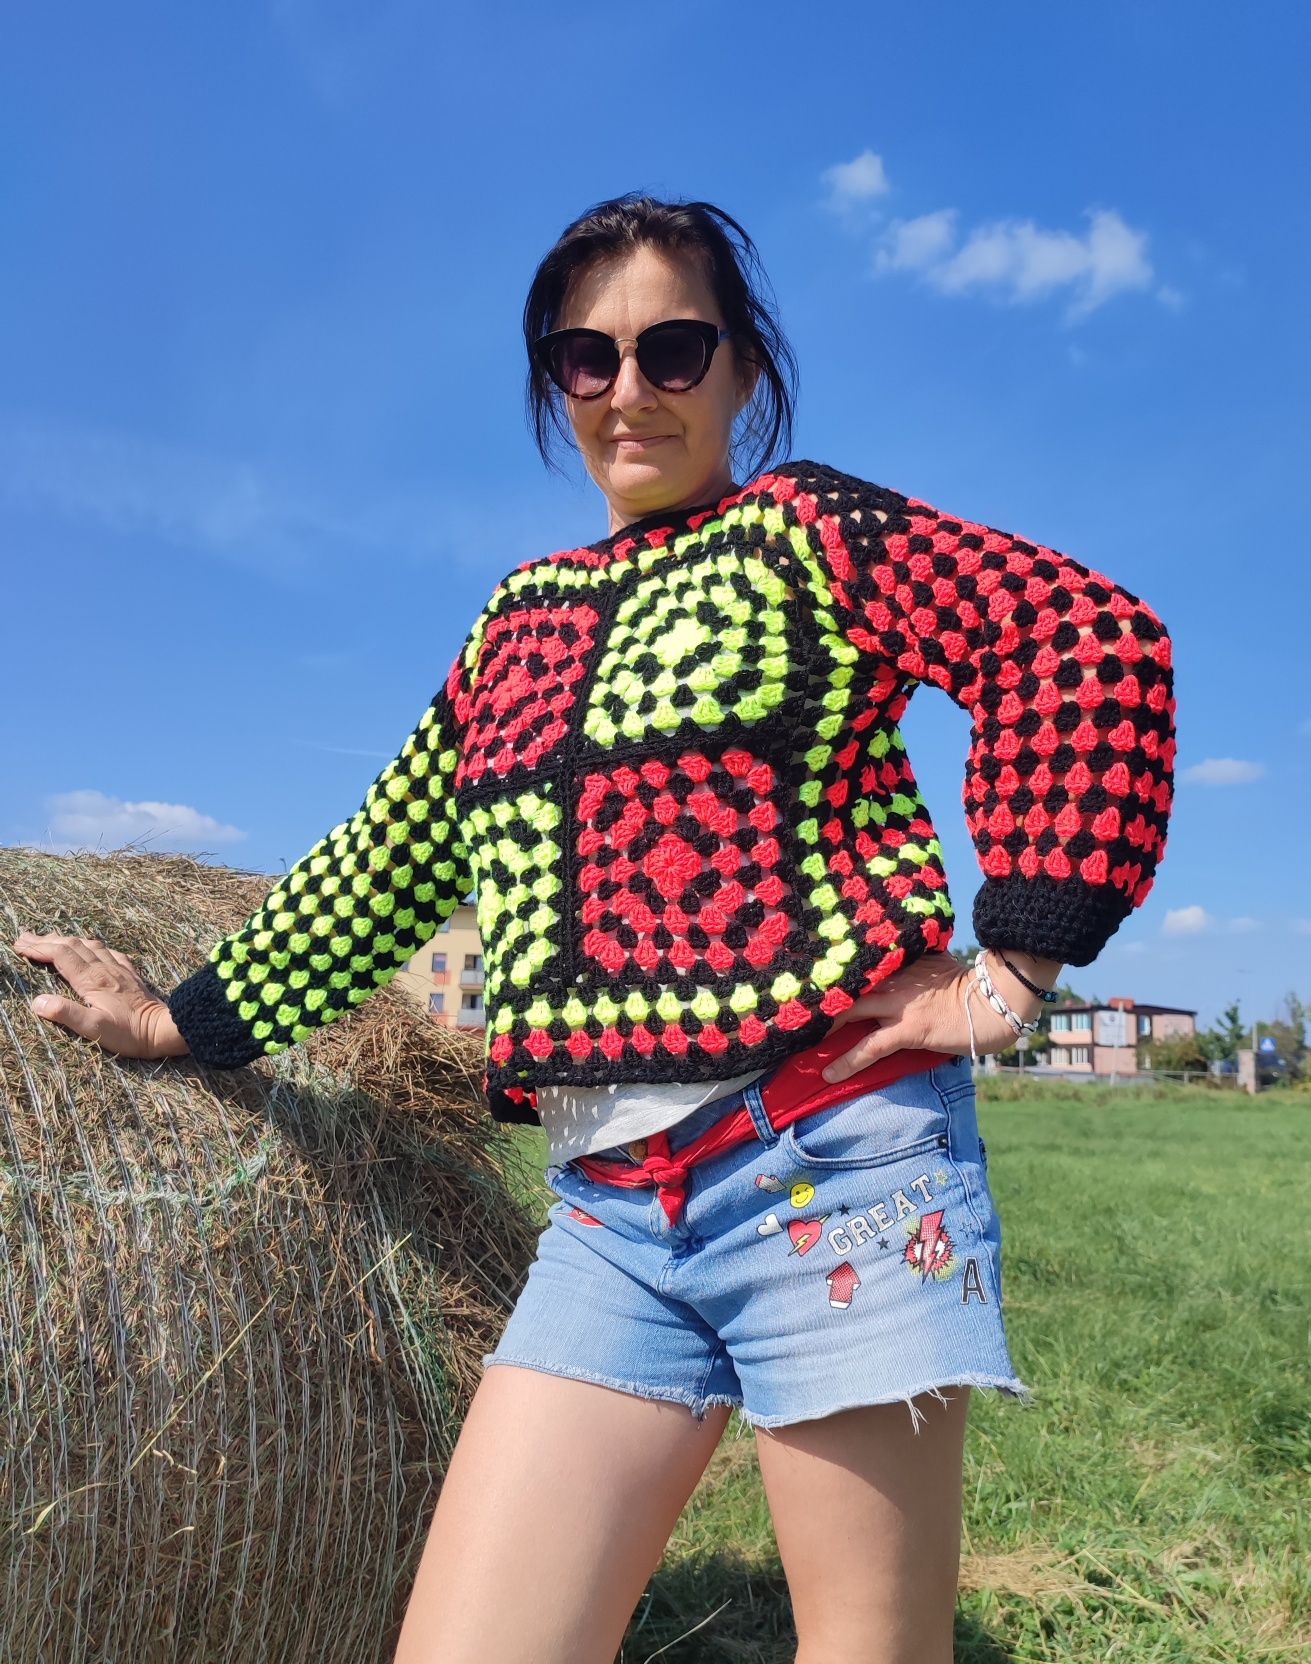 Sweterek w neonowych kolorach handmade